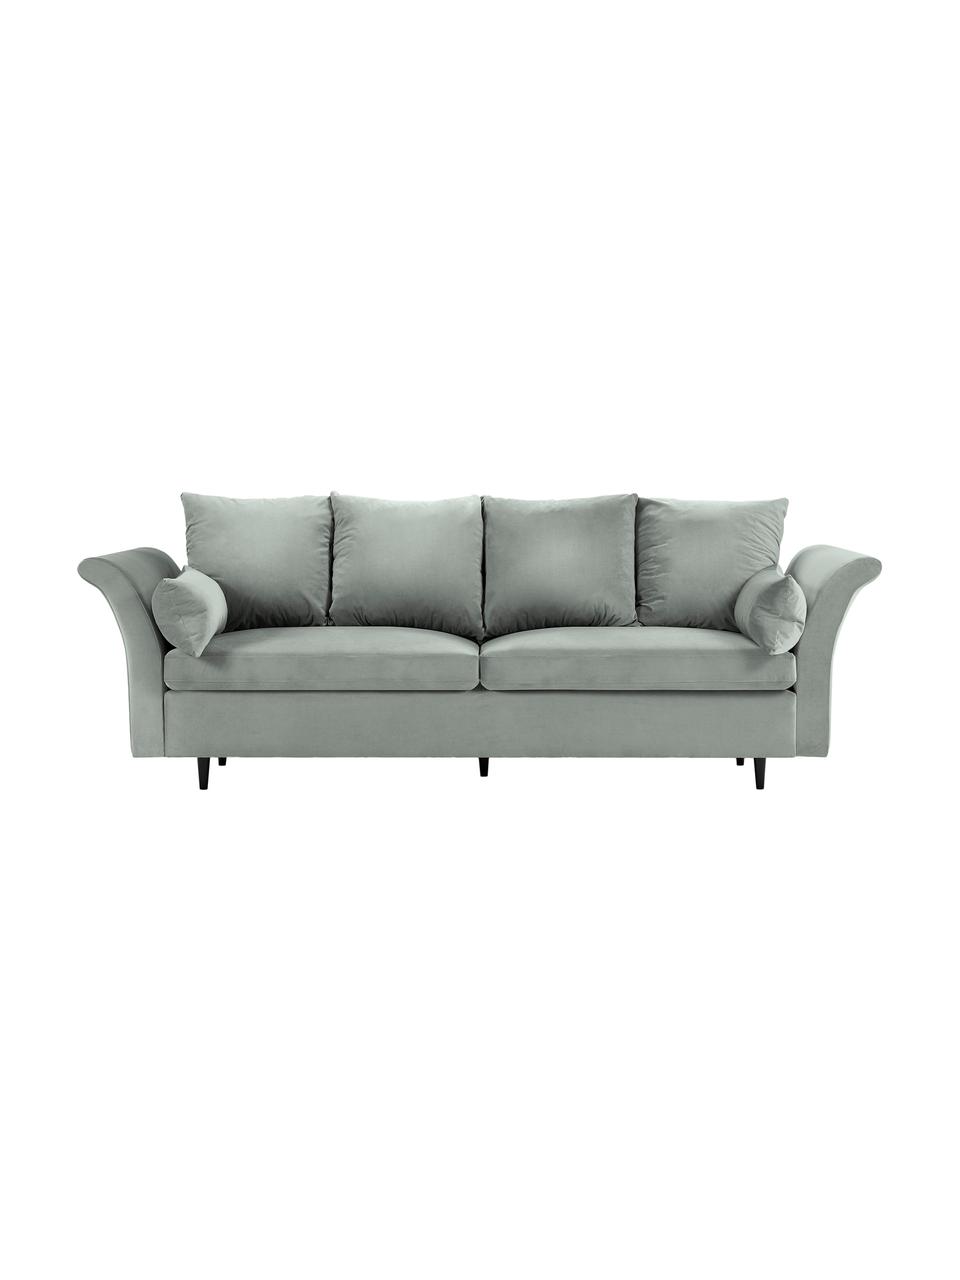 Sofa rozkładana z aksamitu z funkcją przechowywania Lola (3-osobowa), Nogi: drewno, Jasny szary, S 245 x G 95 cm